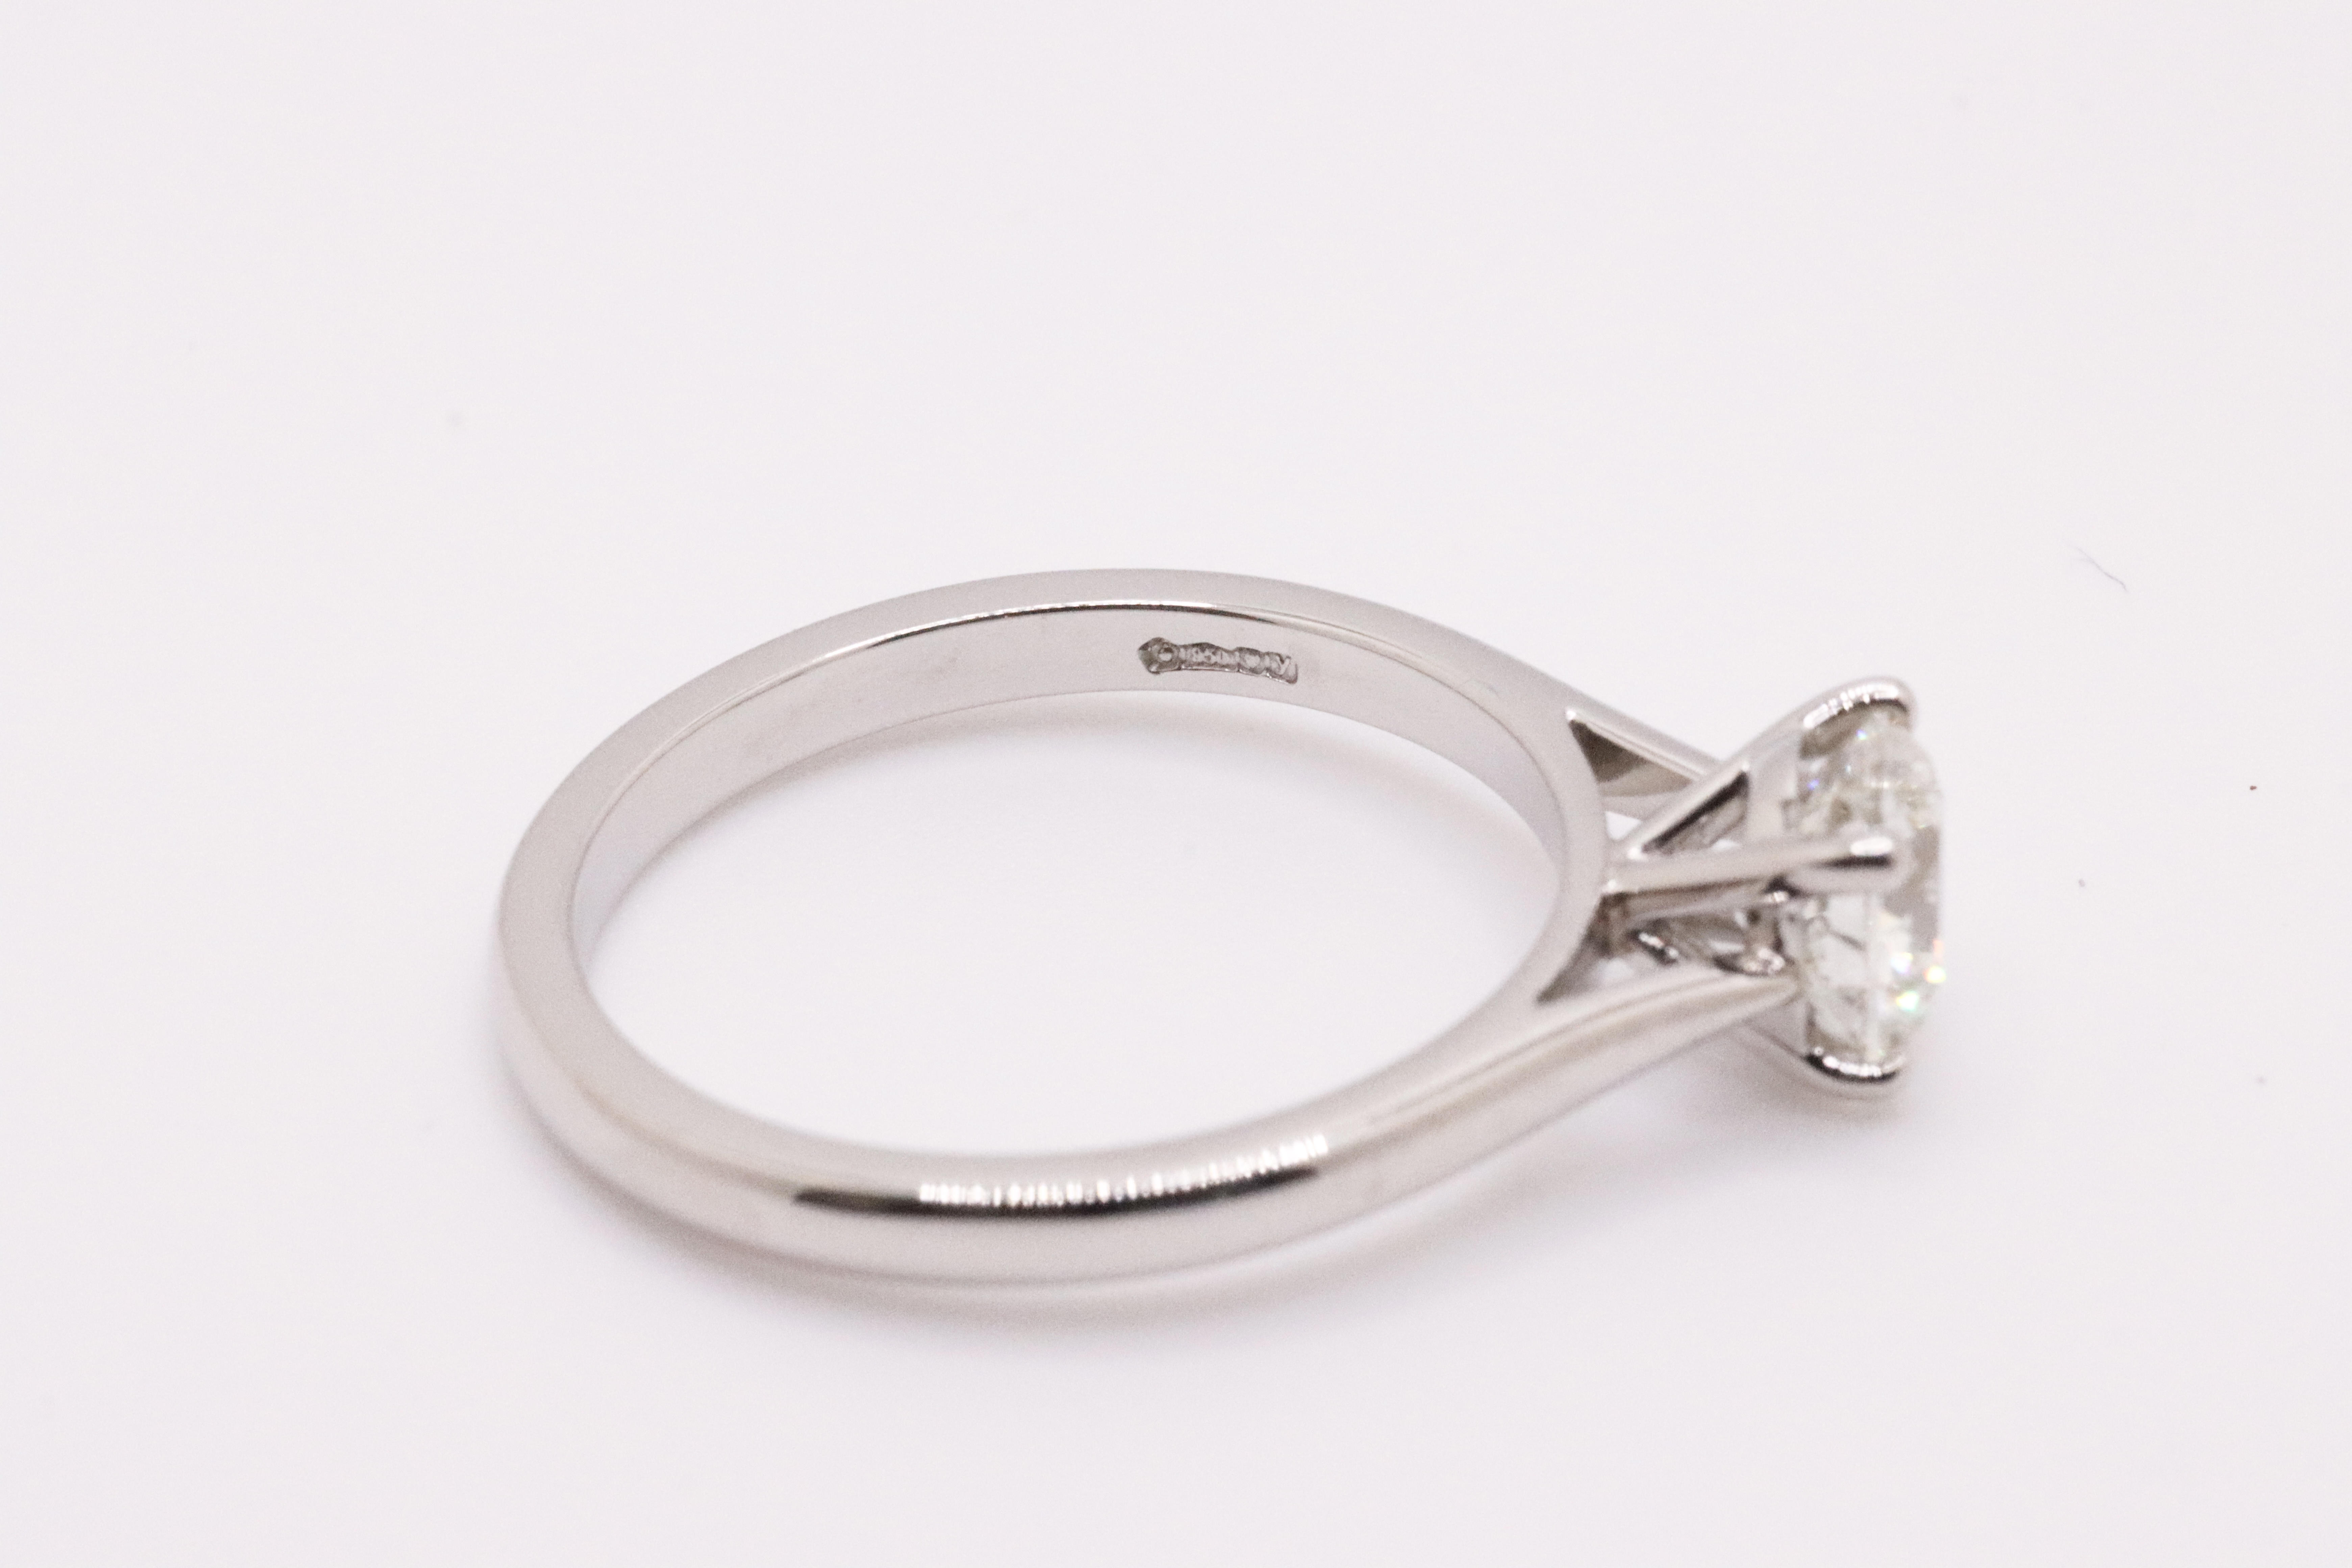 Round Brilliant Cut Natural Diamond Platinum Ring 1.20 Carat D Colour VS2 Clarity ID EX EX - GIA - Image 3 of 6